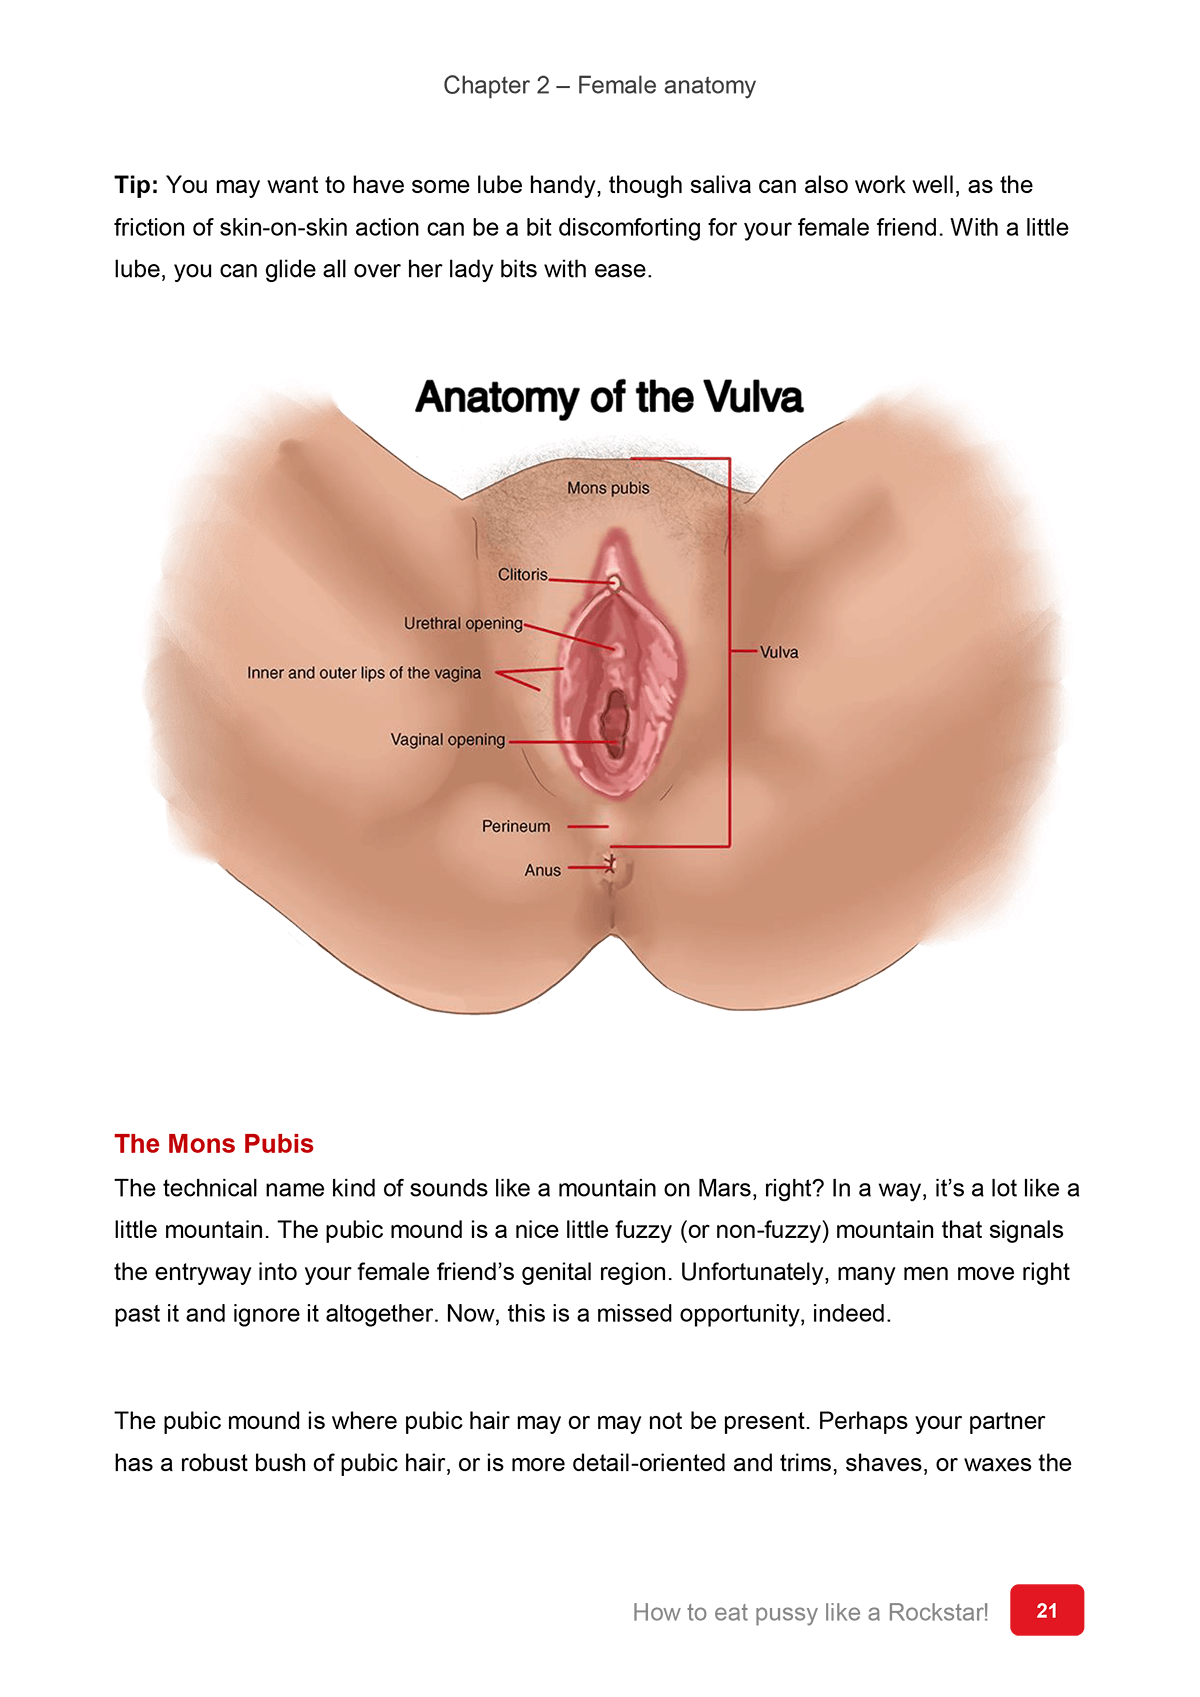 How do you eat a vagina